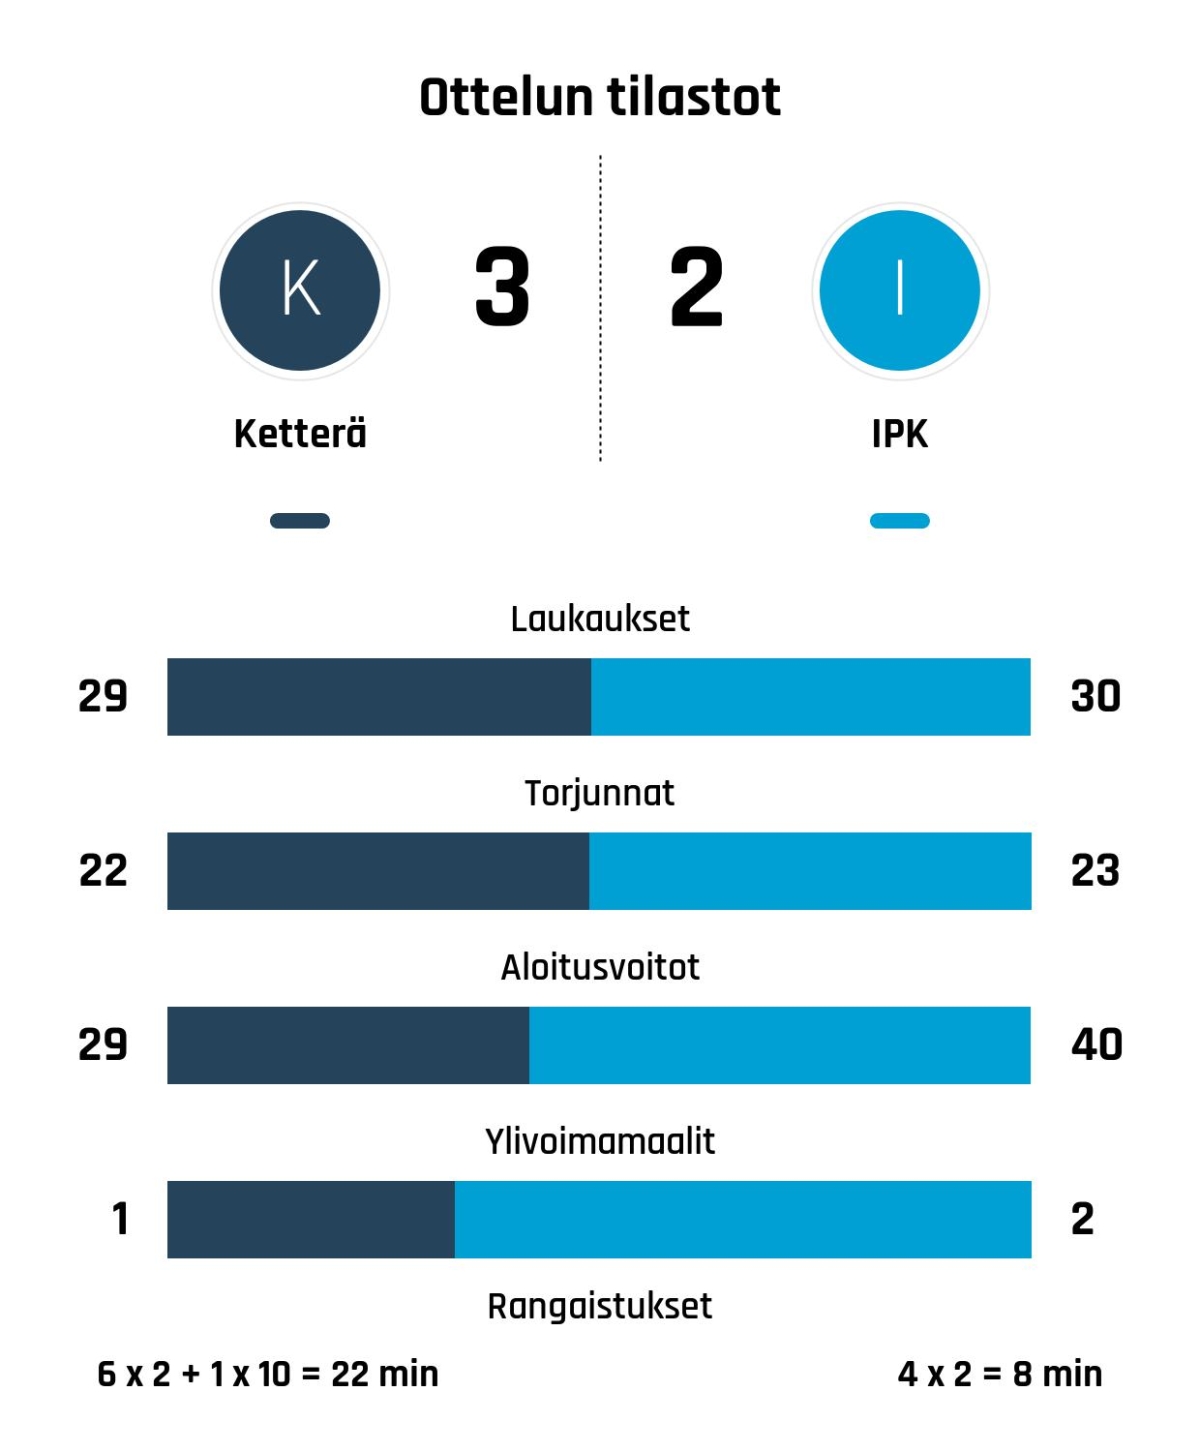 Ketterä voitti IPK:n niukasti 3-2